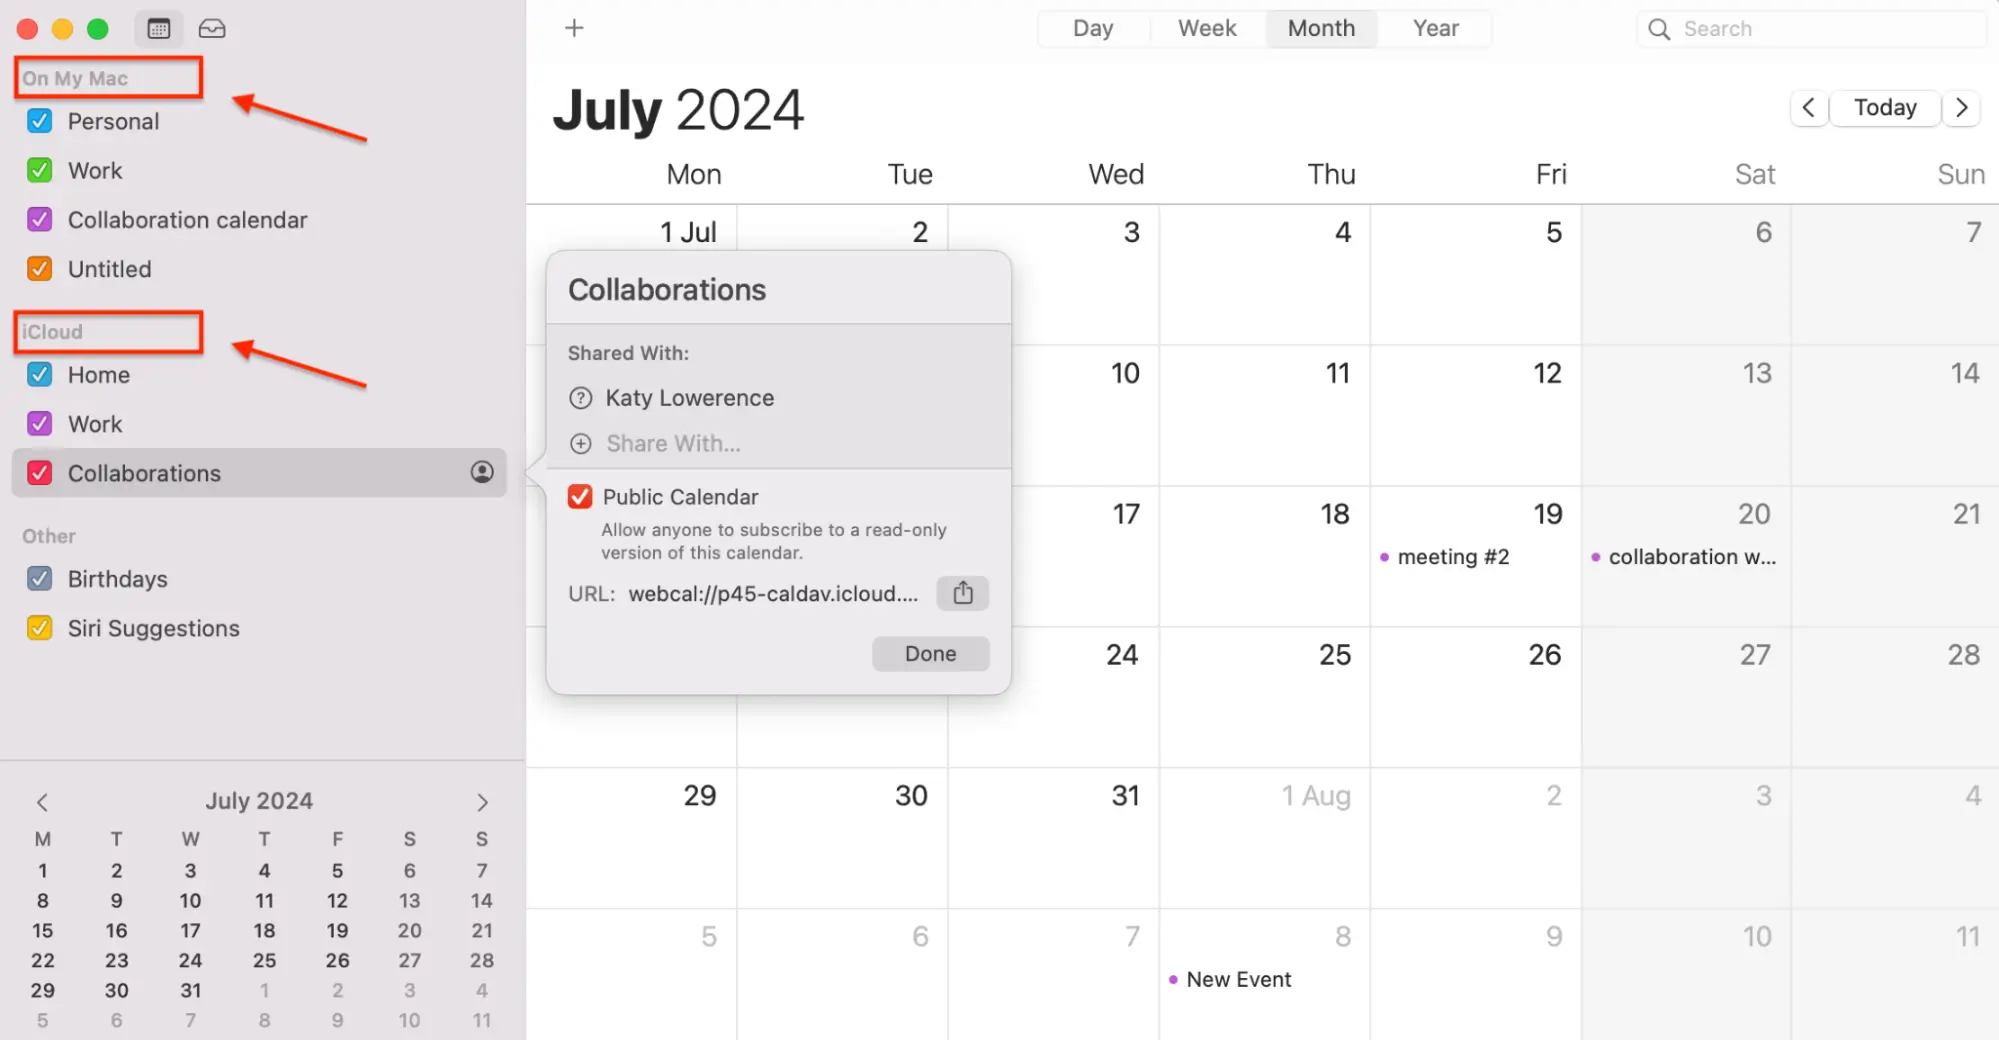 Built-in app Calendar interface